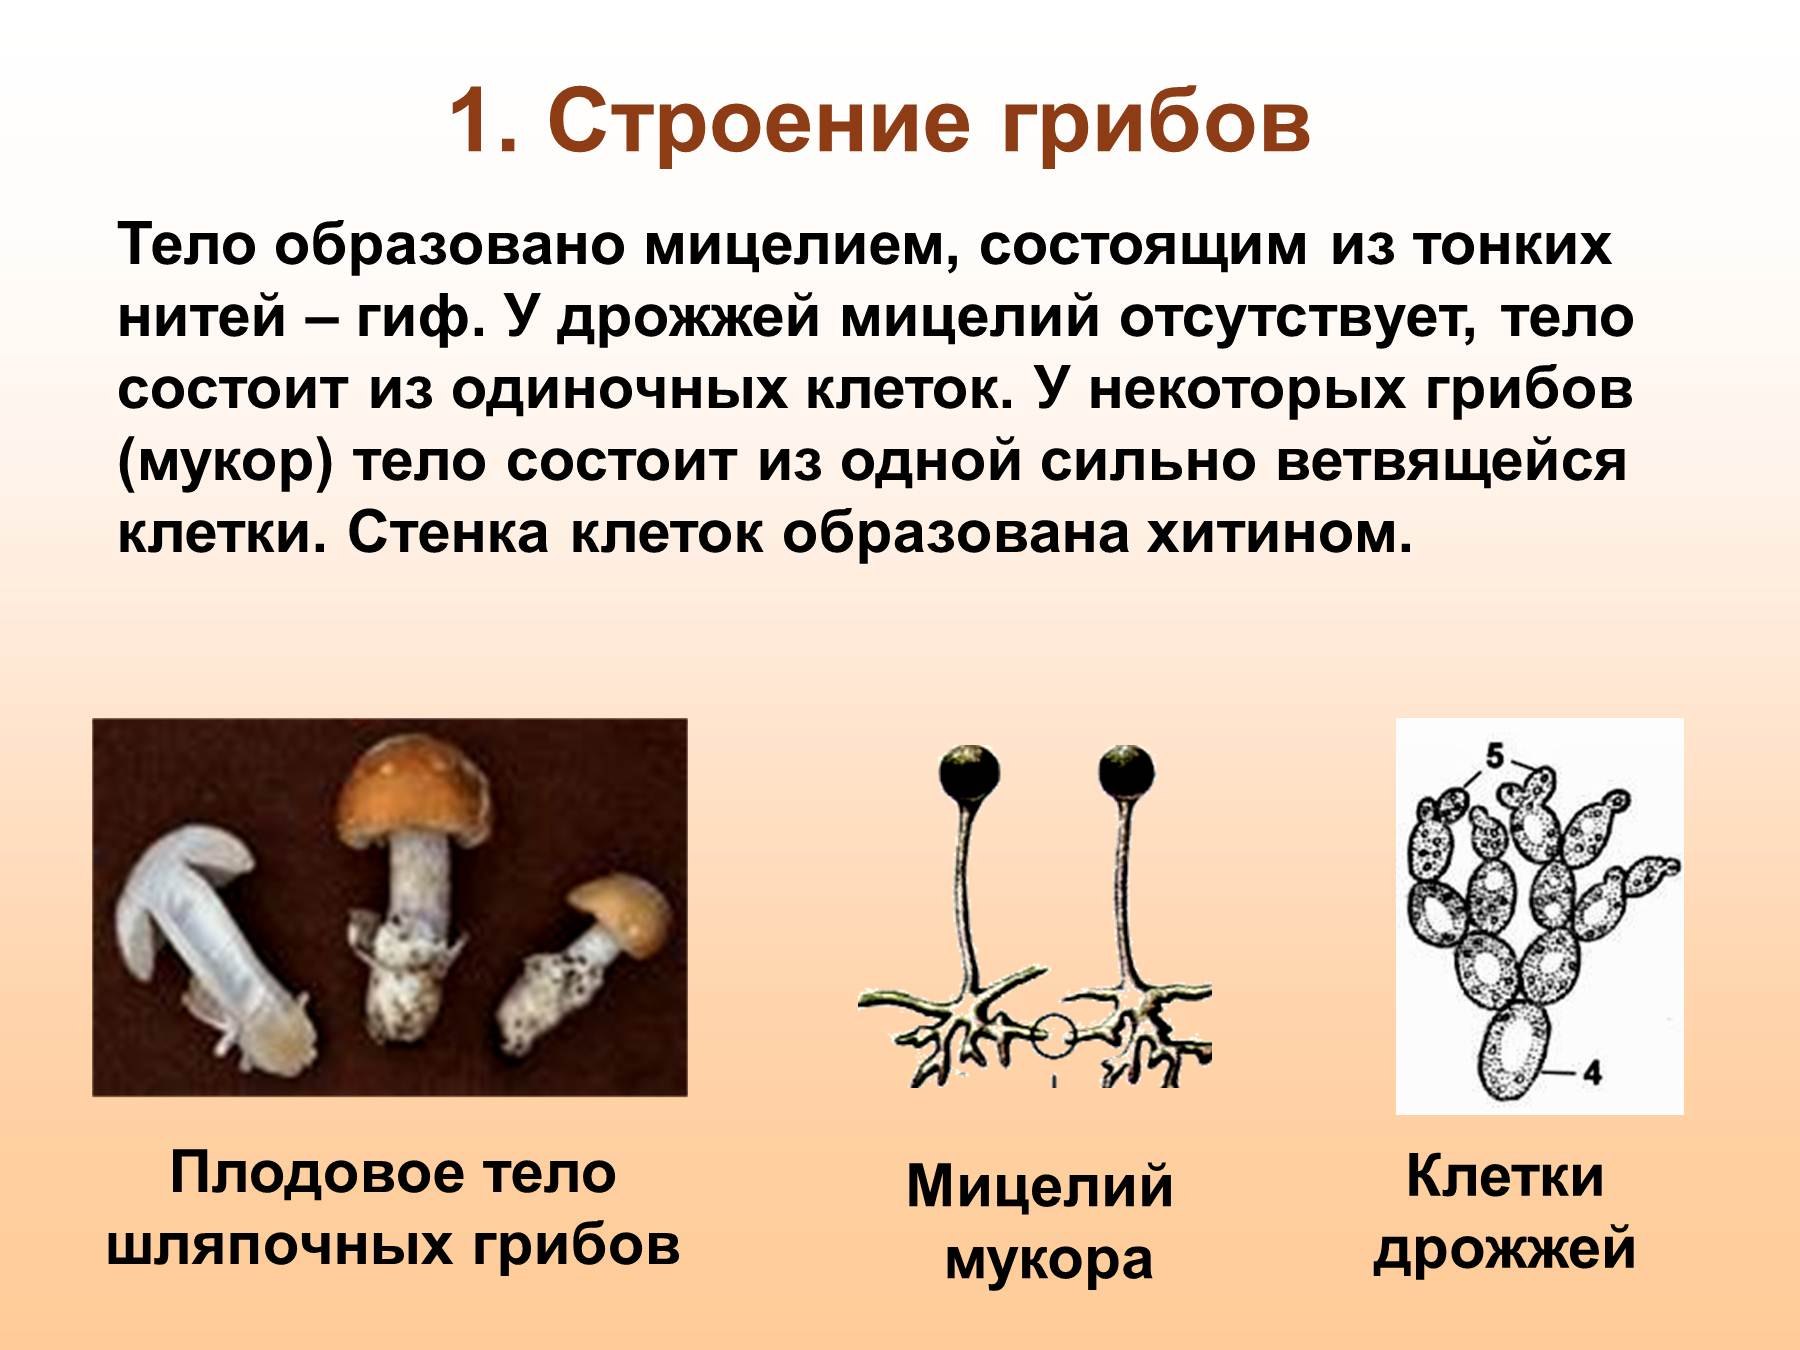 Мицелий грибов образуют: